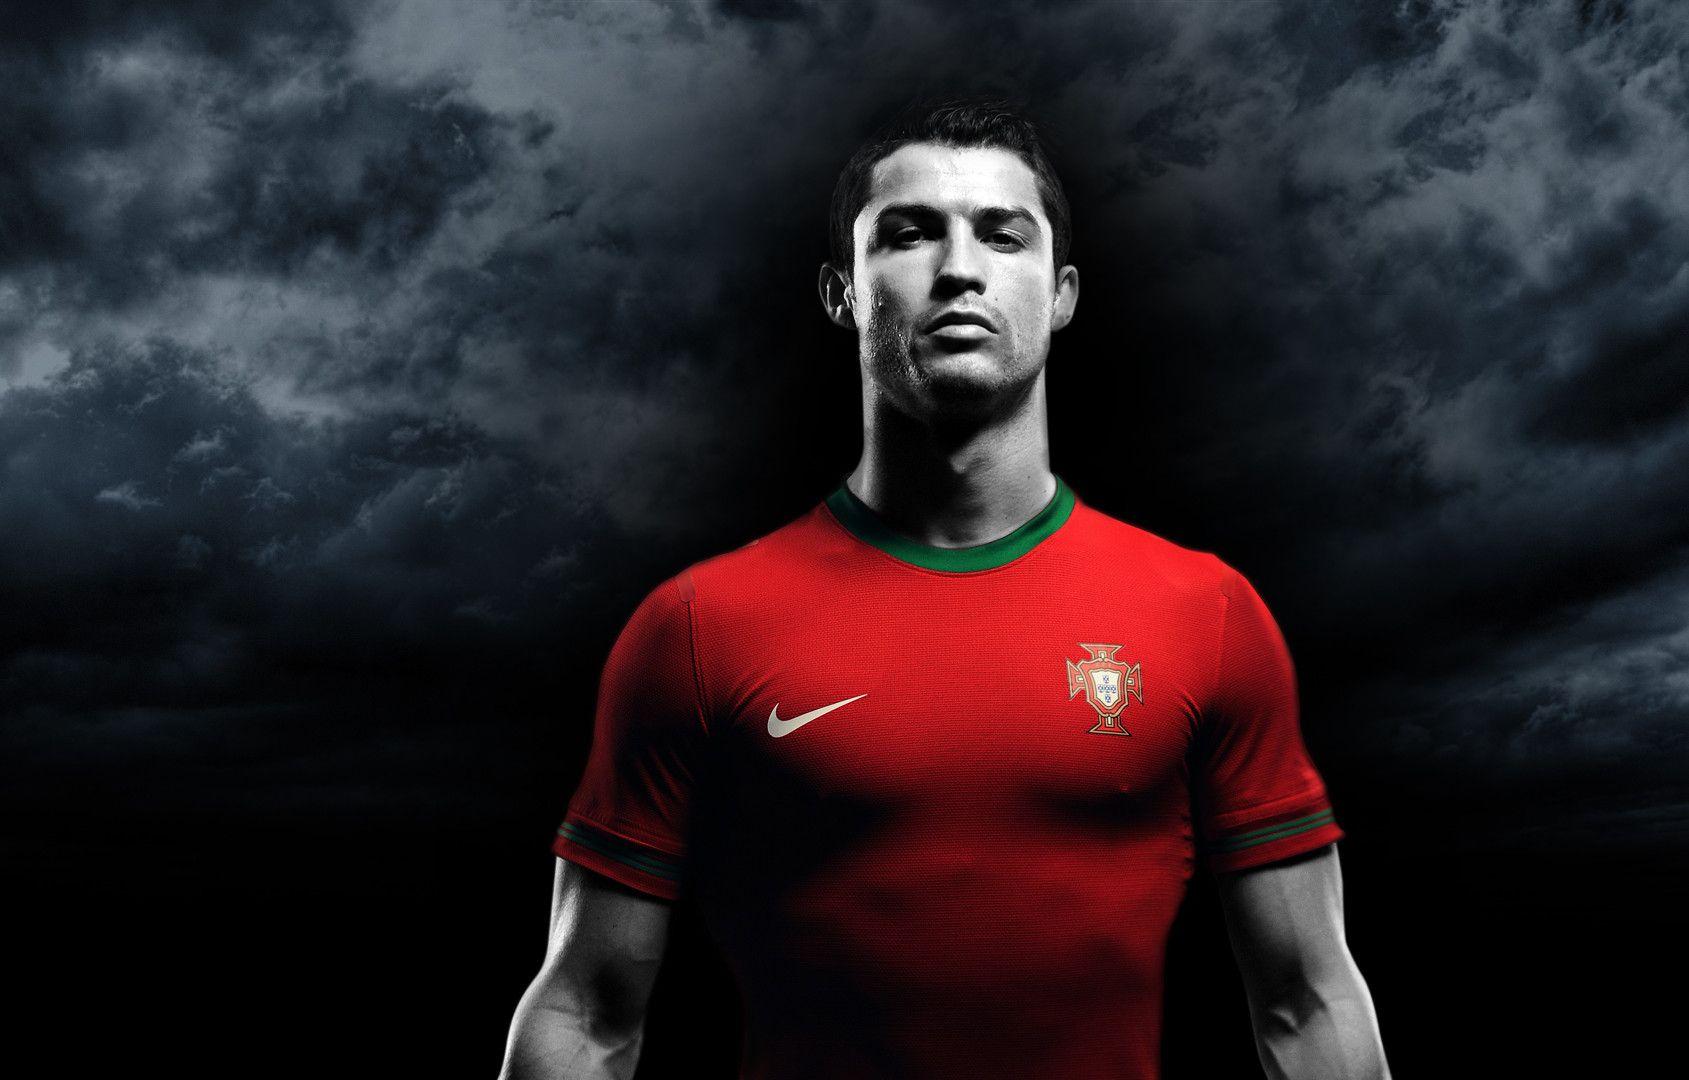 Portugal Ronaldo Wallpaper - WALLPAPERS / Ronaldo cristiano portugal ...